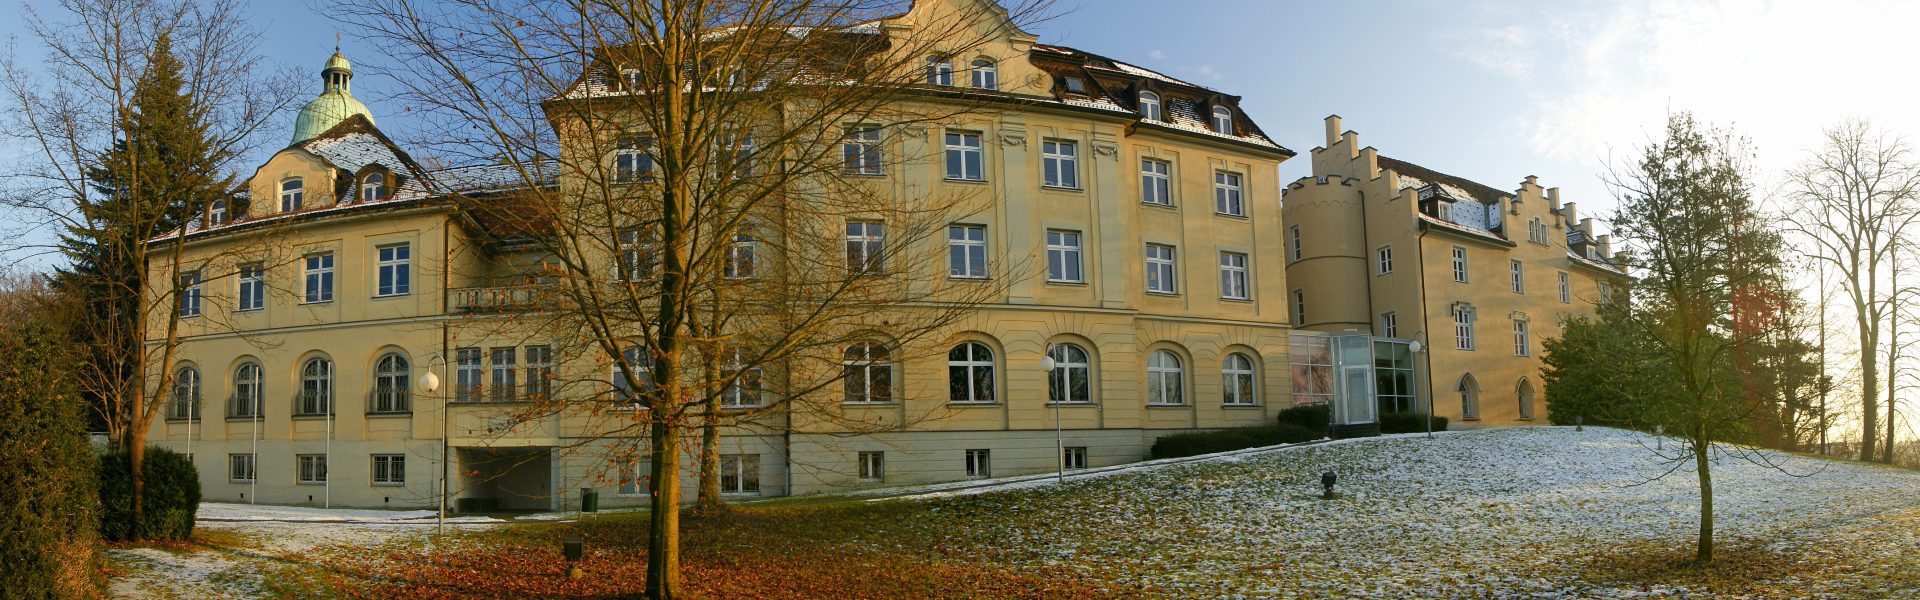 Vorarlberger Landesbibliothek